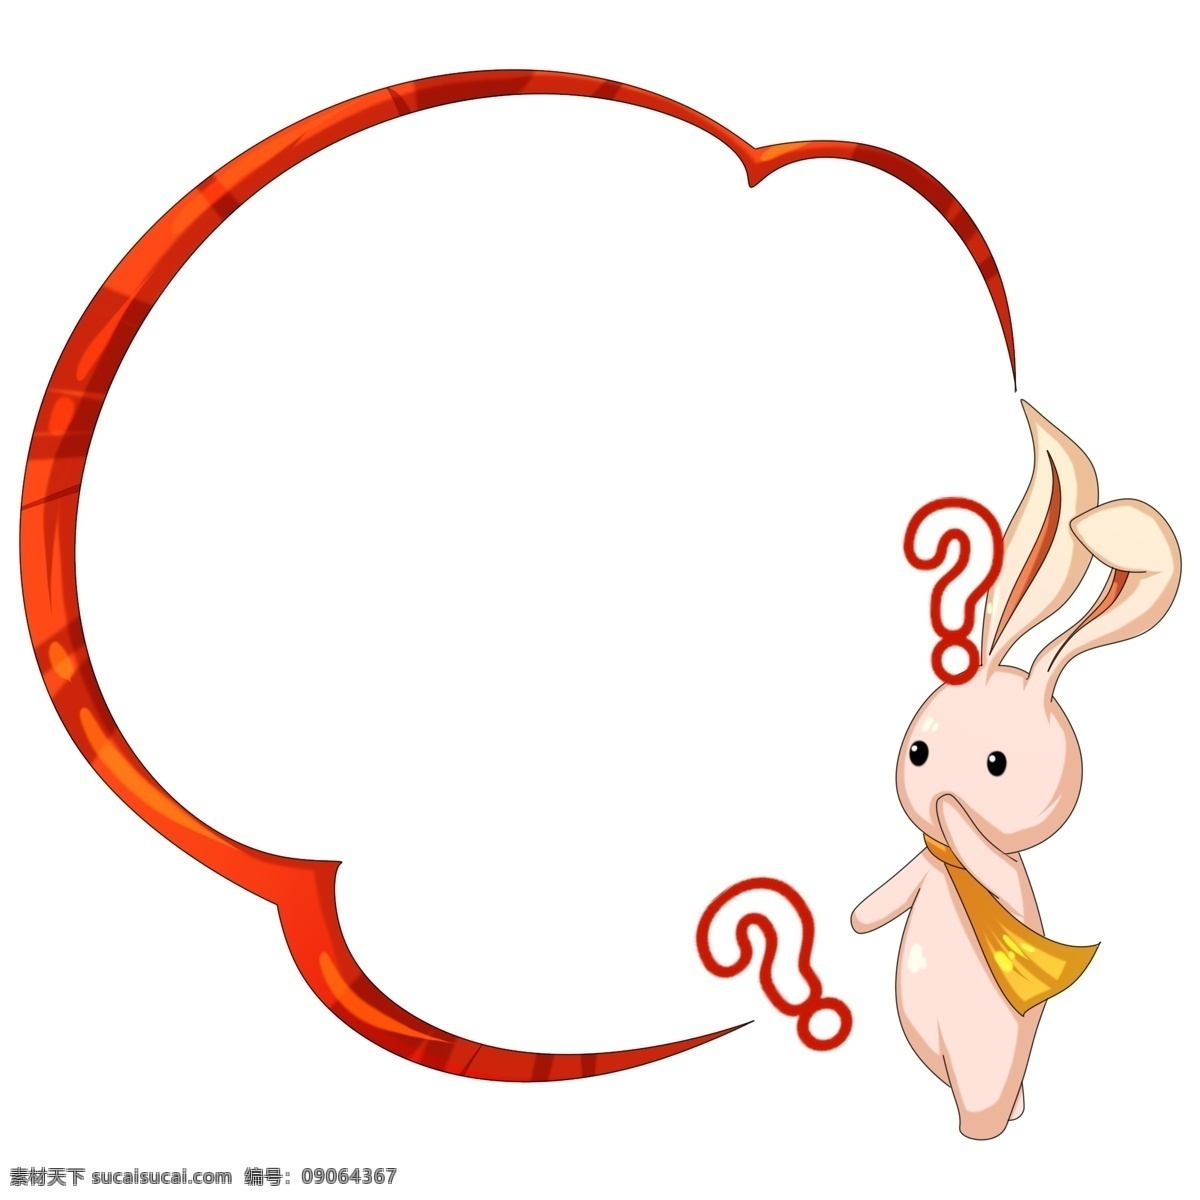 小 兔子 边框 手绘 插画 红色的边框 小兔子边框 可爱的边框 动物边框 创意边框 边框装饰 边框插画